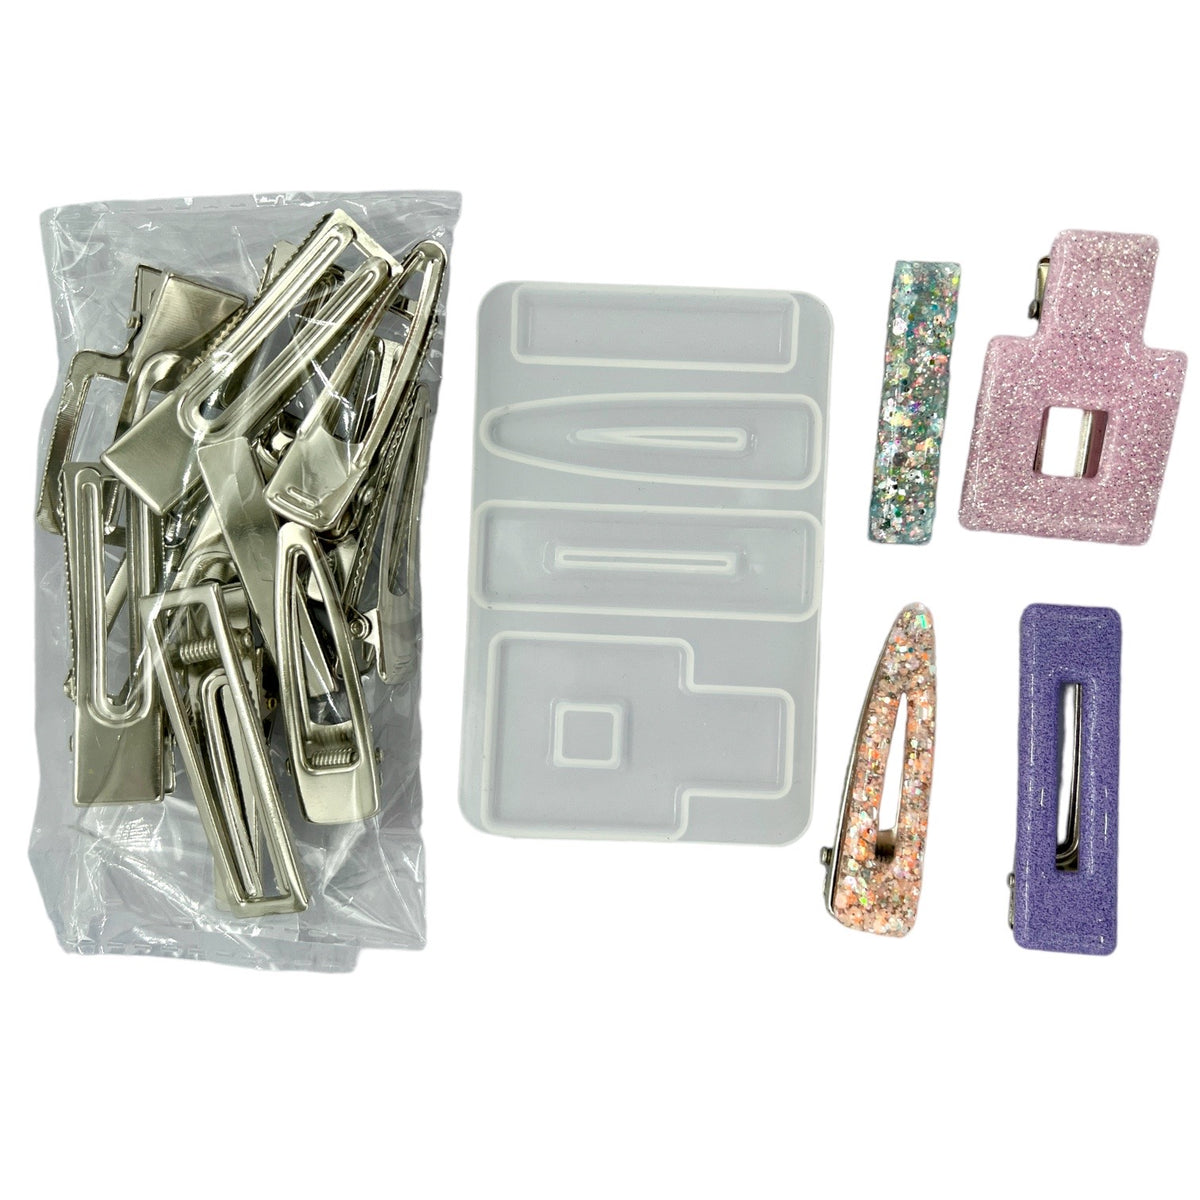 Easy Barrette Essential Starter Kit - Makes 12